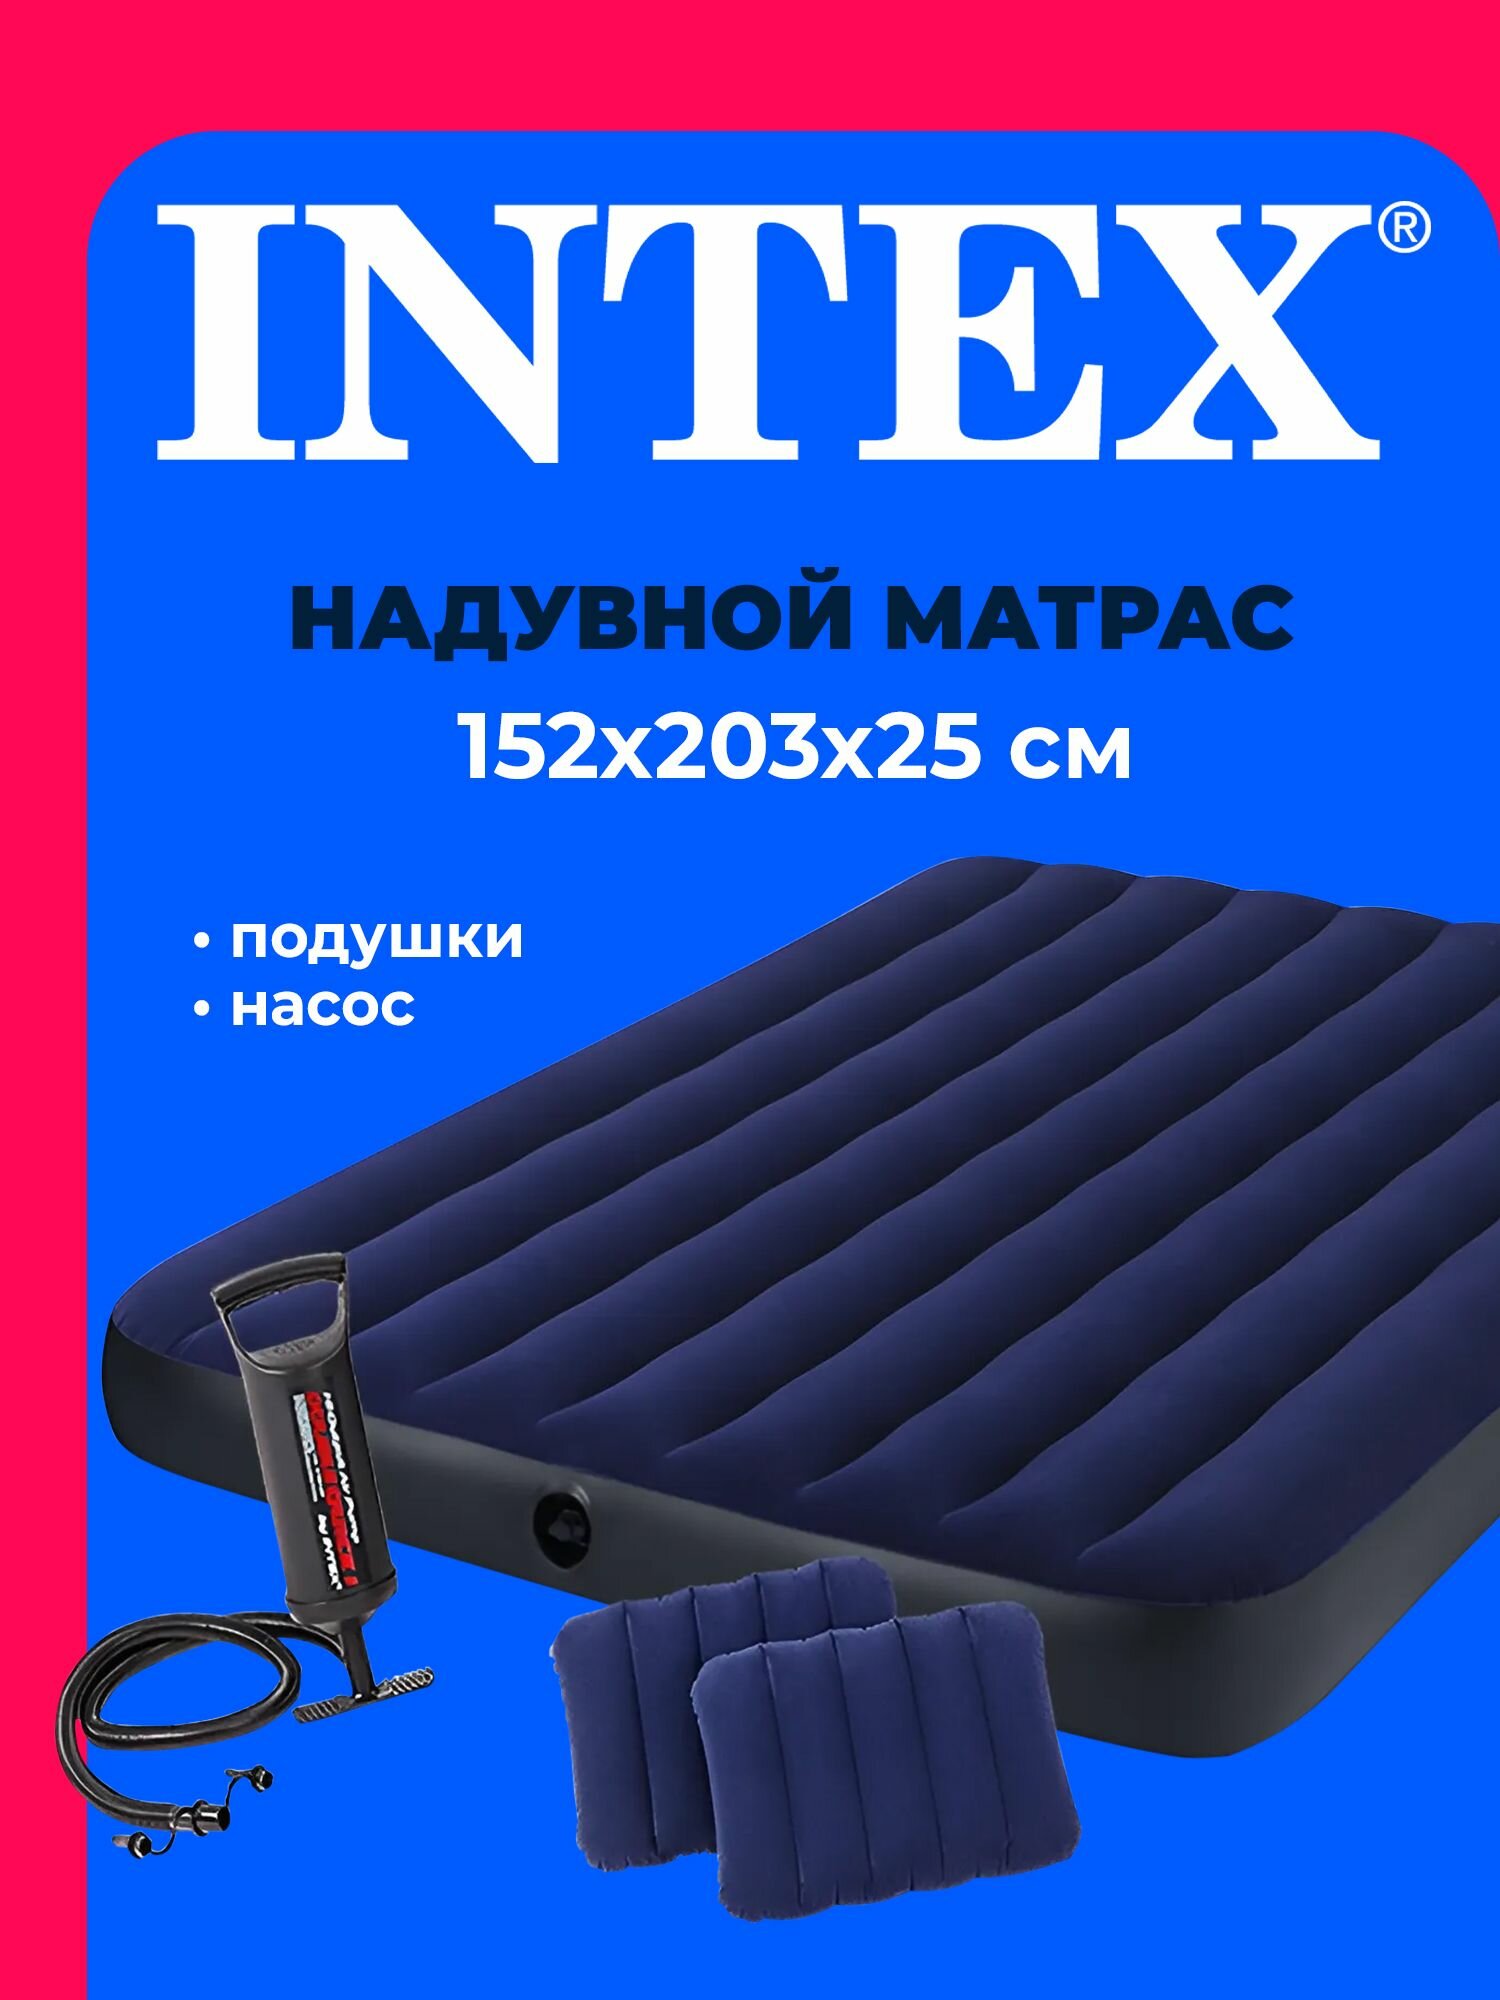 Матрас надувной 64765 INTEX 152x203x25 см